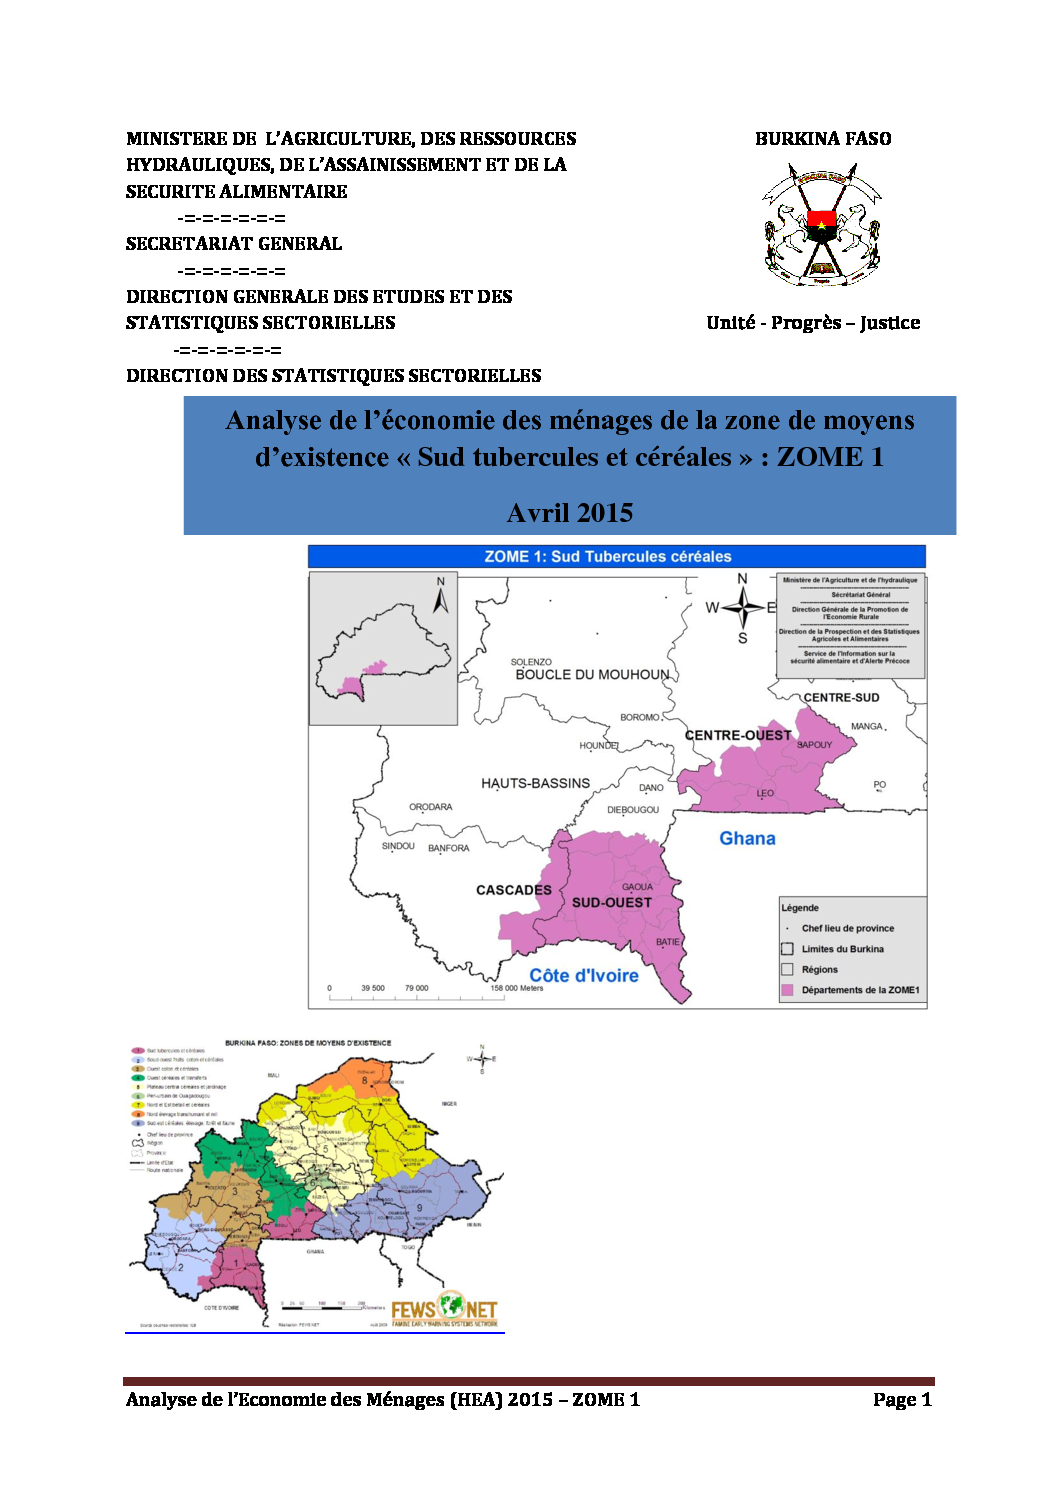 Profil Burkina Faso - ZOME 1 - Avril 2015